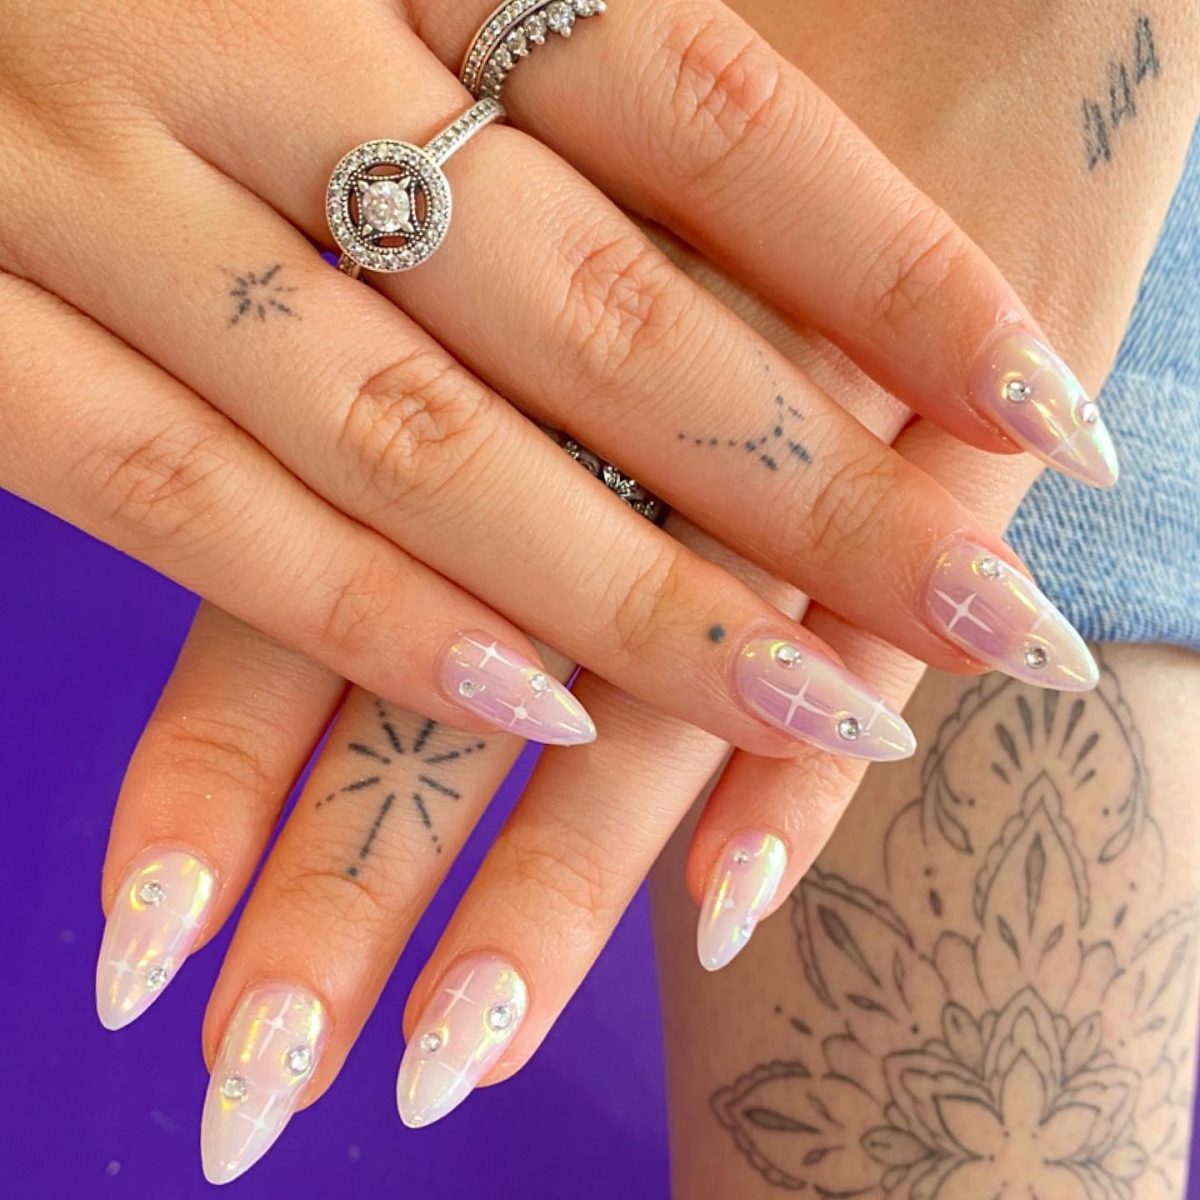 glazed nails with gems